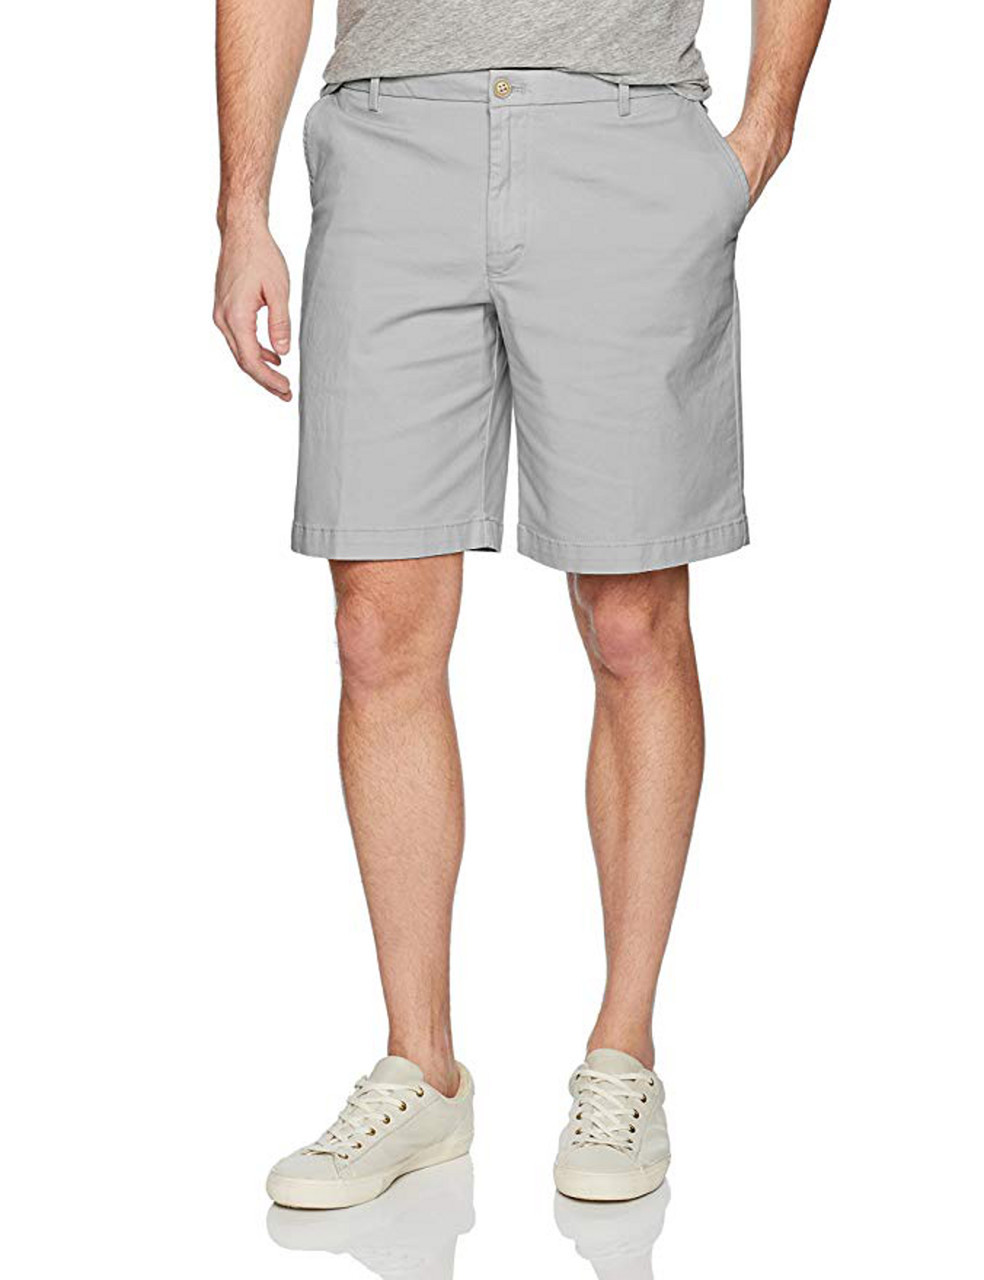 mens shorts 38 waist